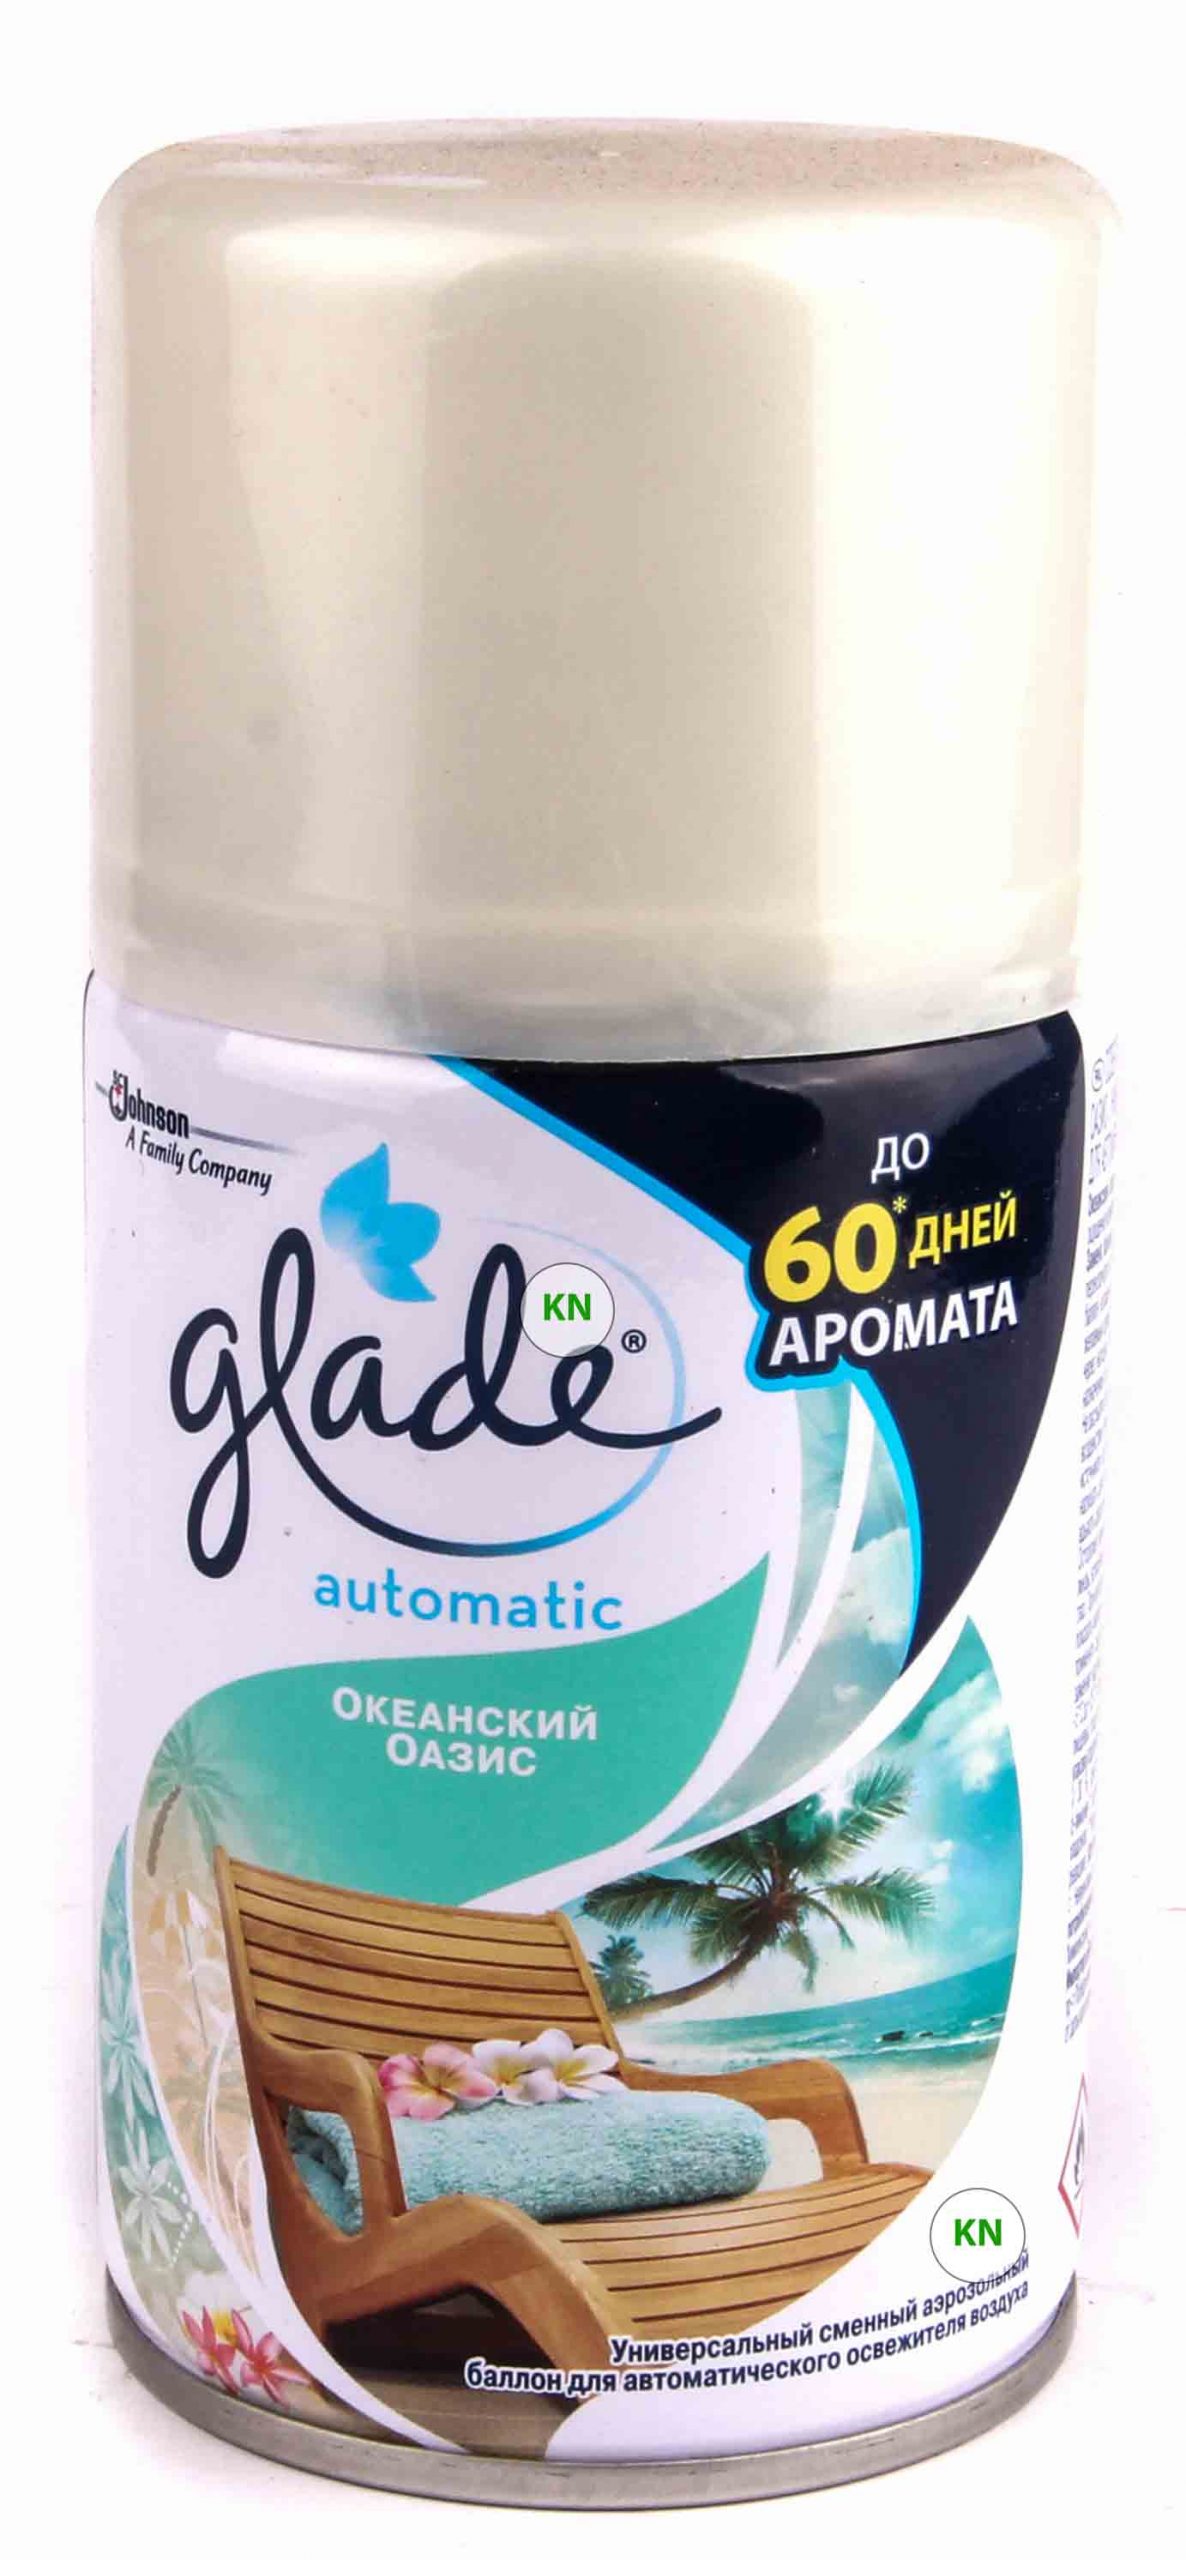 Сменный баллон "Glade" к автоматическому освежителю воздуха, 269 мл